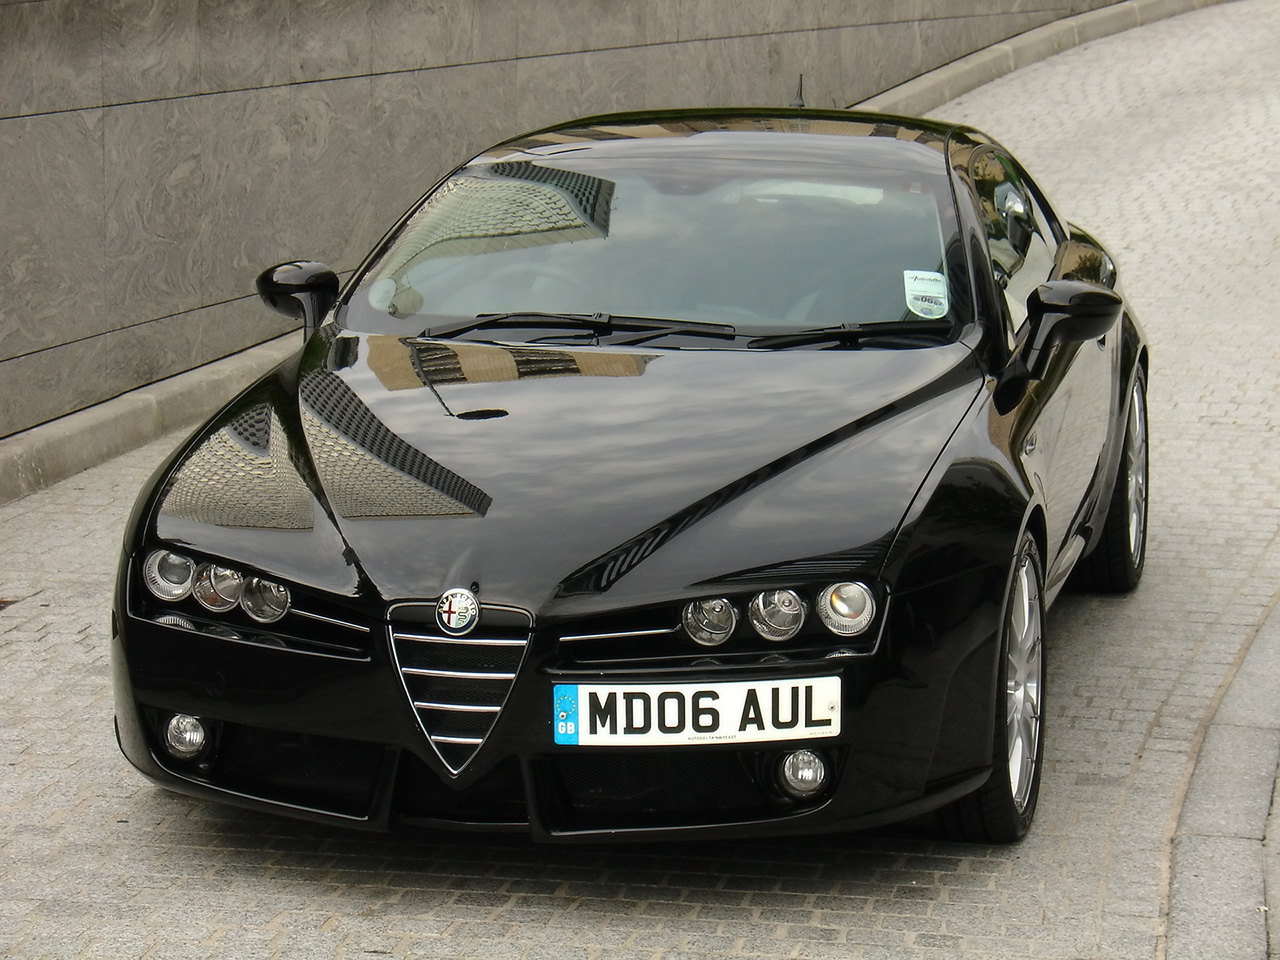 2007-Autodelta-Alfa-Romeo-Brera-J5-3-2-C-Front-Angle-Closeup-1280x960.jpg